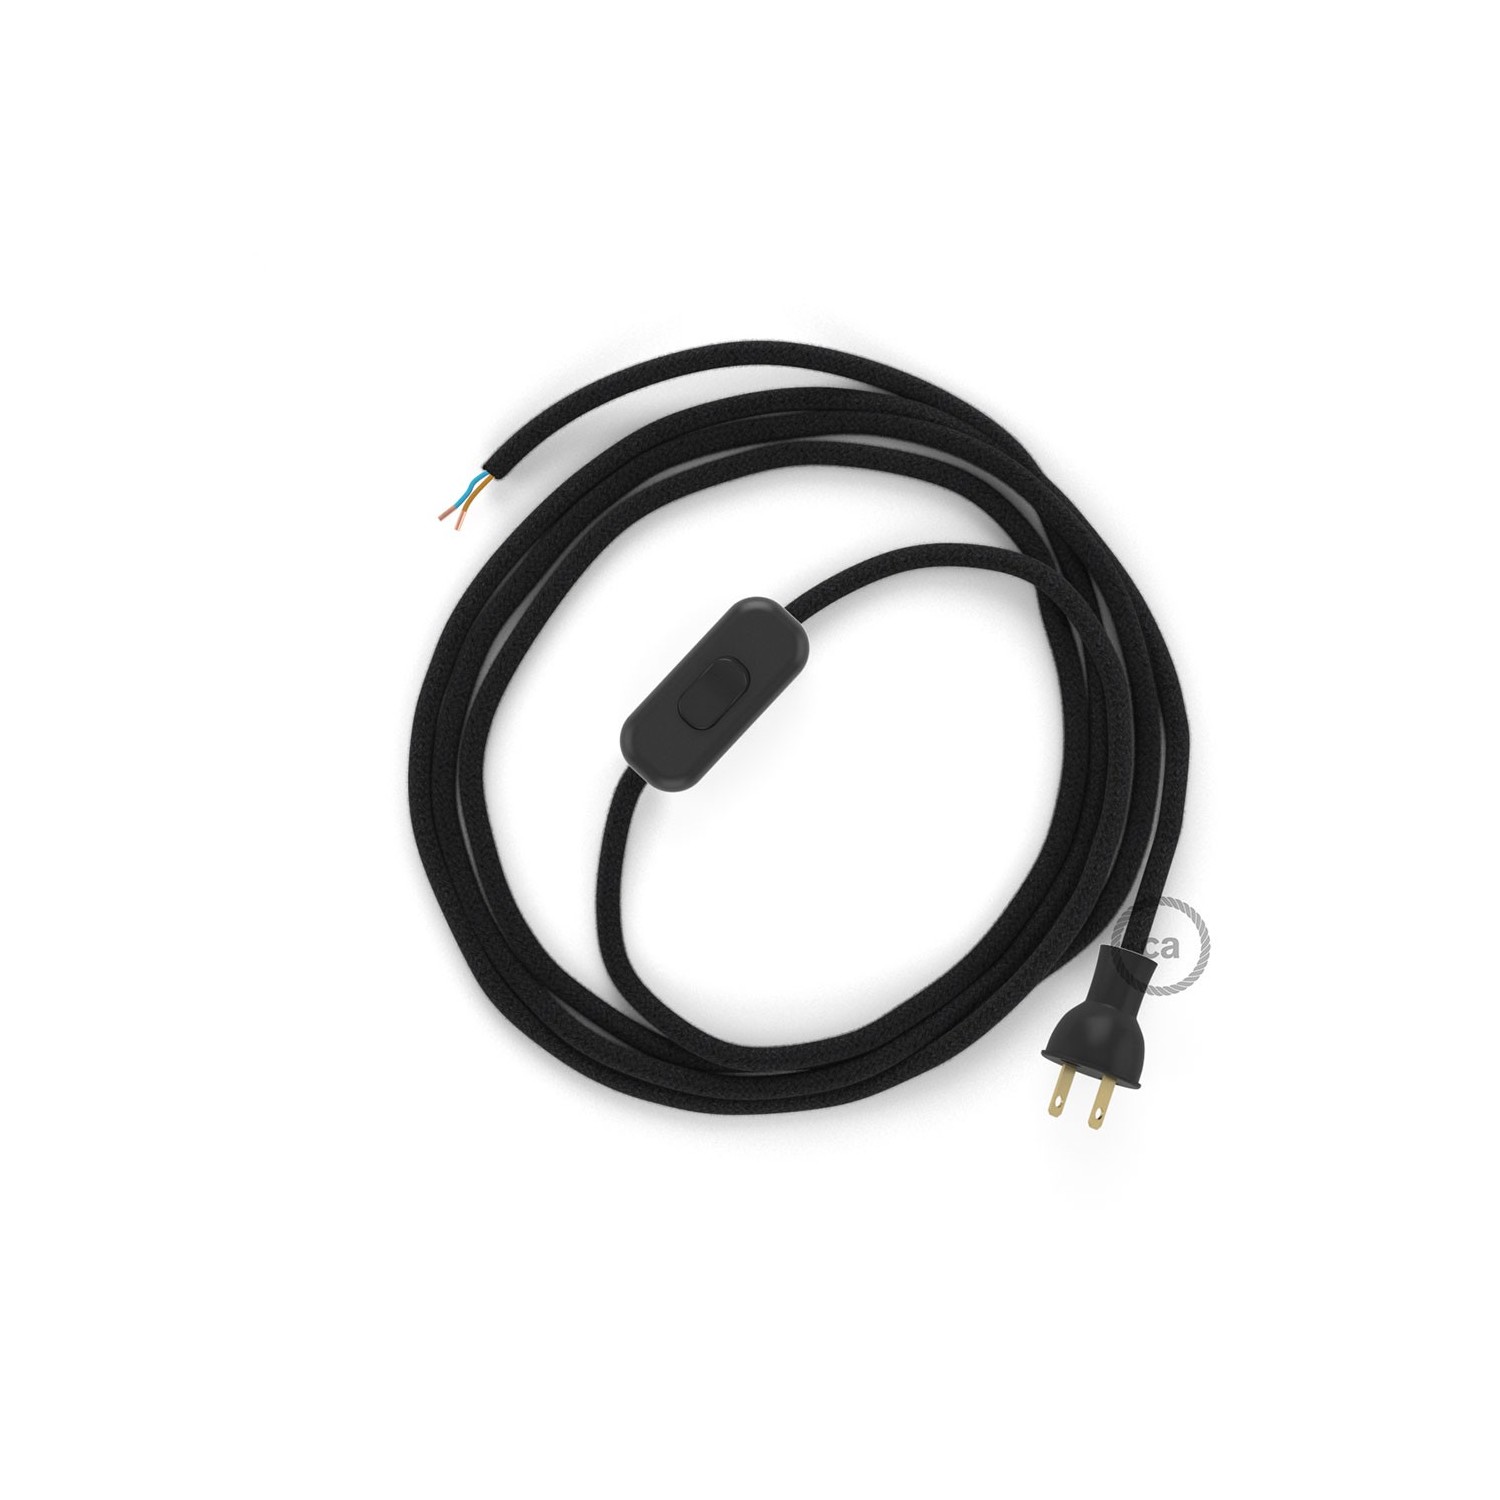 Cableado para lámpara de mesa, cable RC04 Algodón Negro 1,8 m. Elige el color de la clavija y del interruptor!